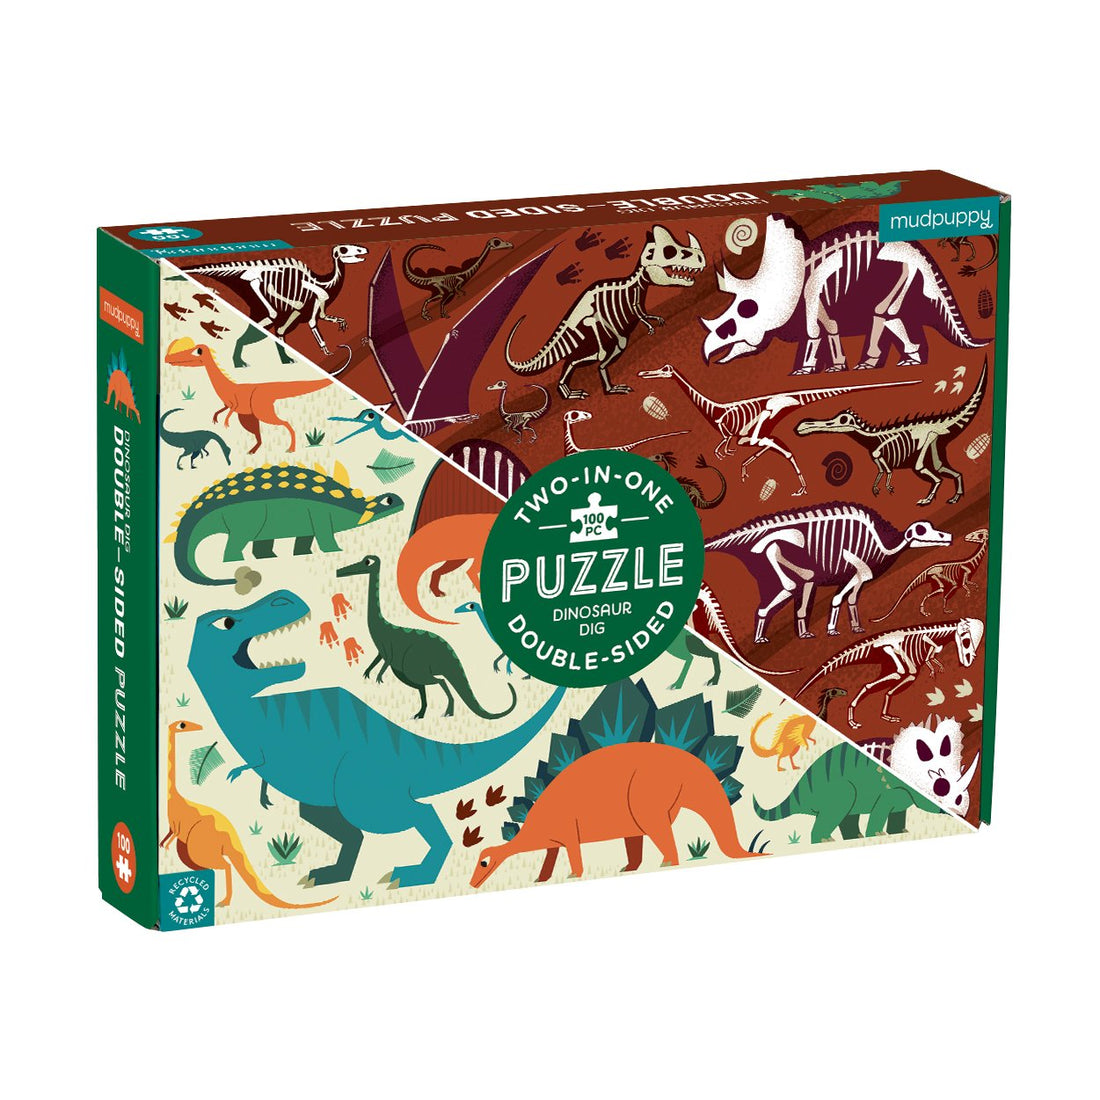 Dinosaur Dig 100 Piece Double-Sided Puzzle - Parkette.